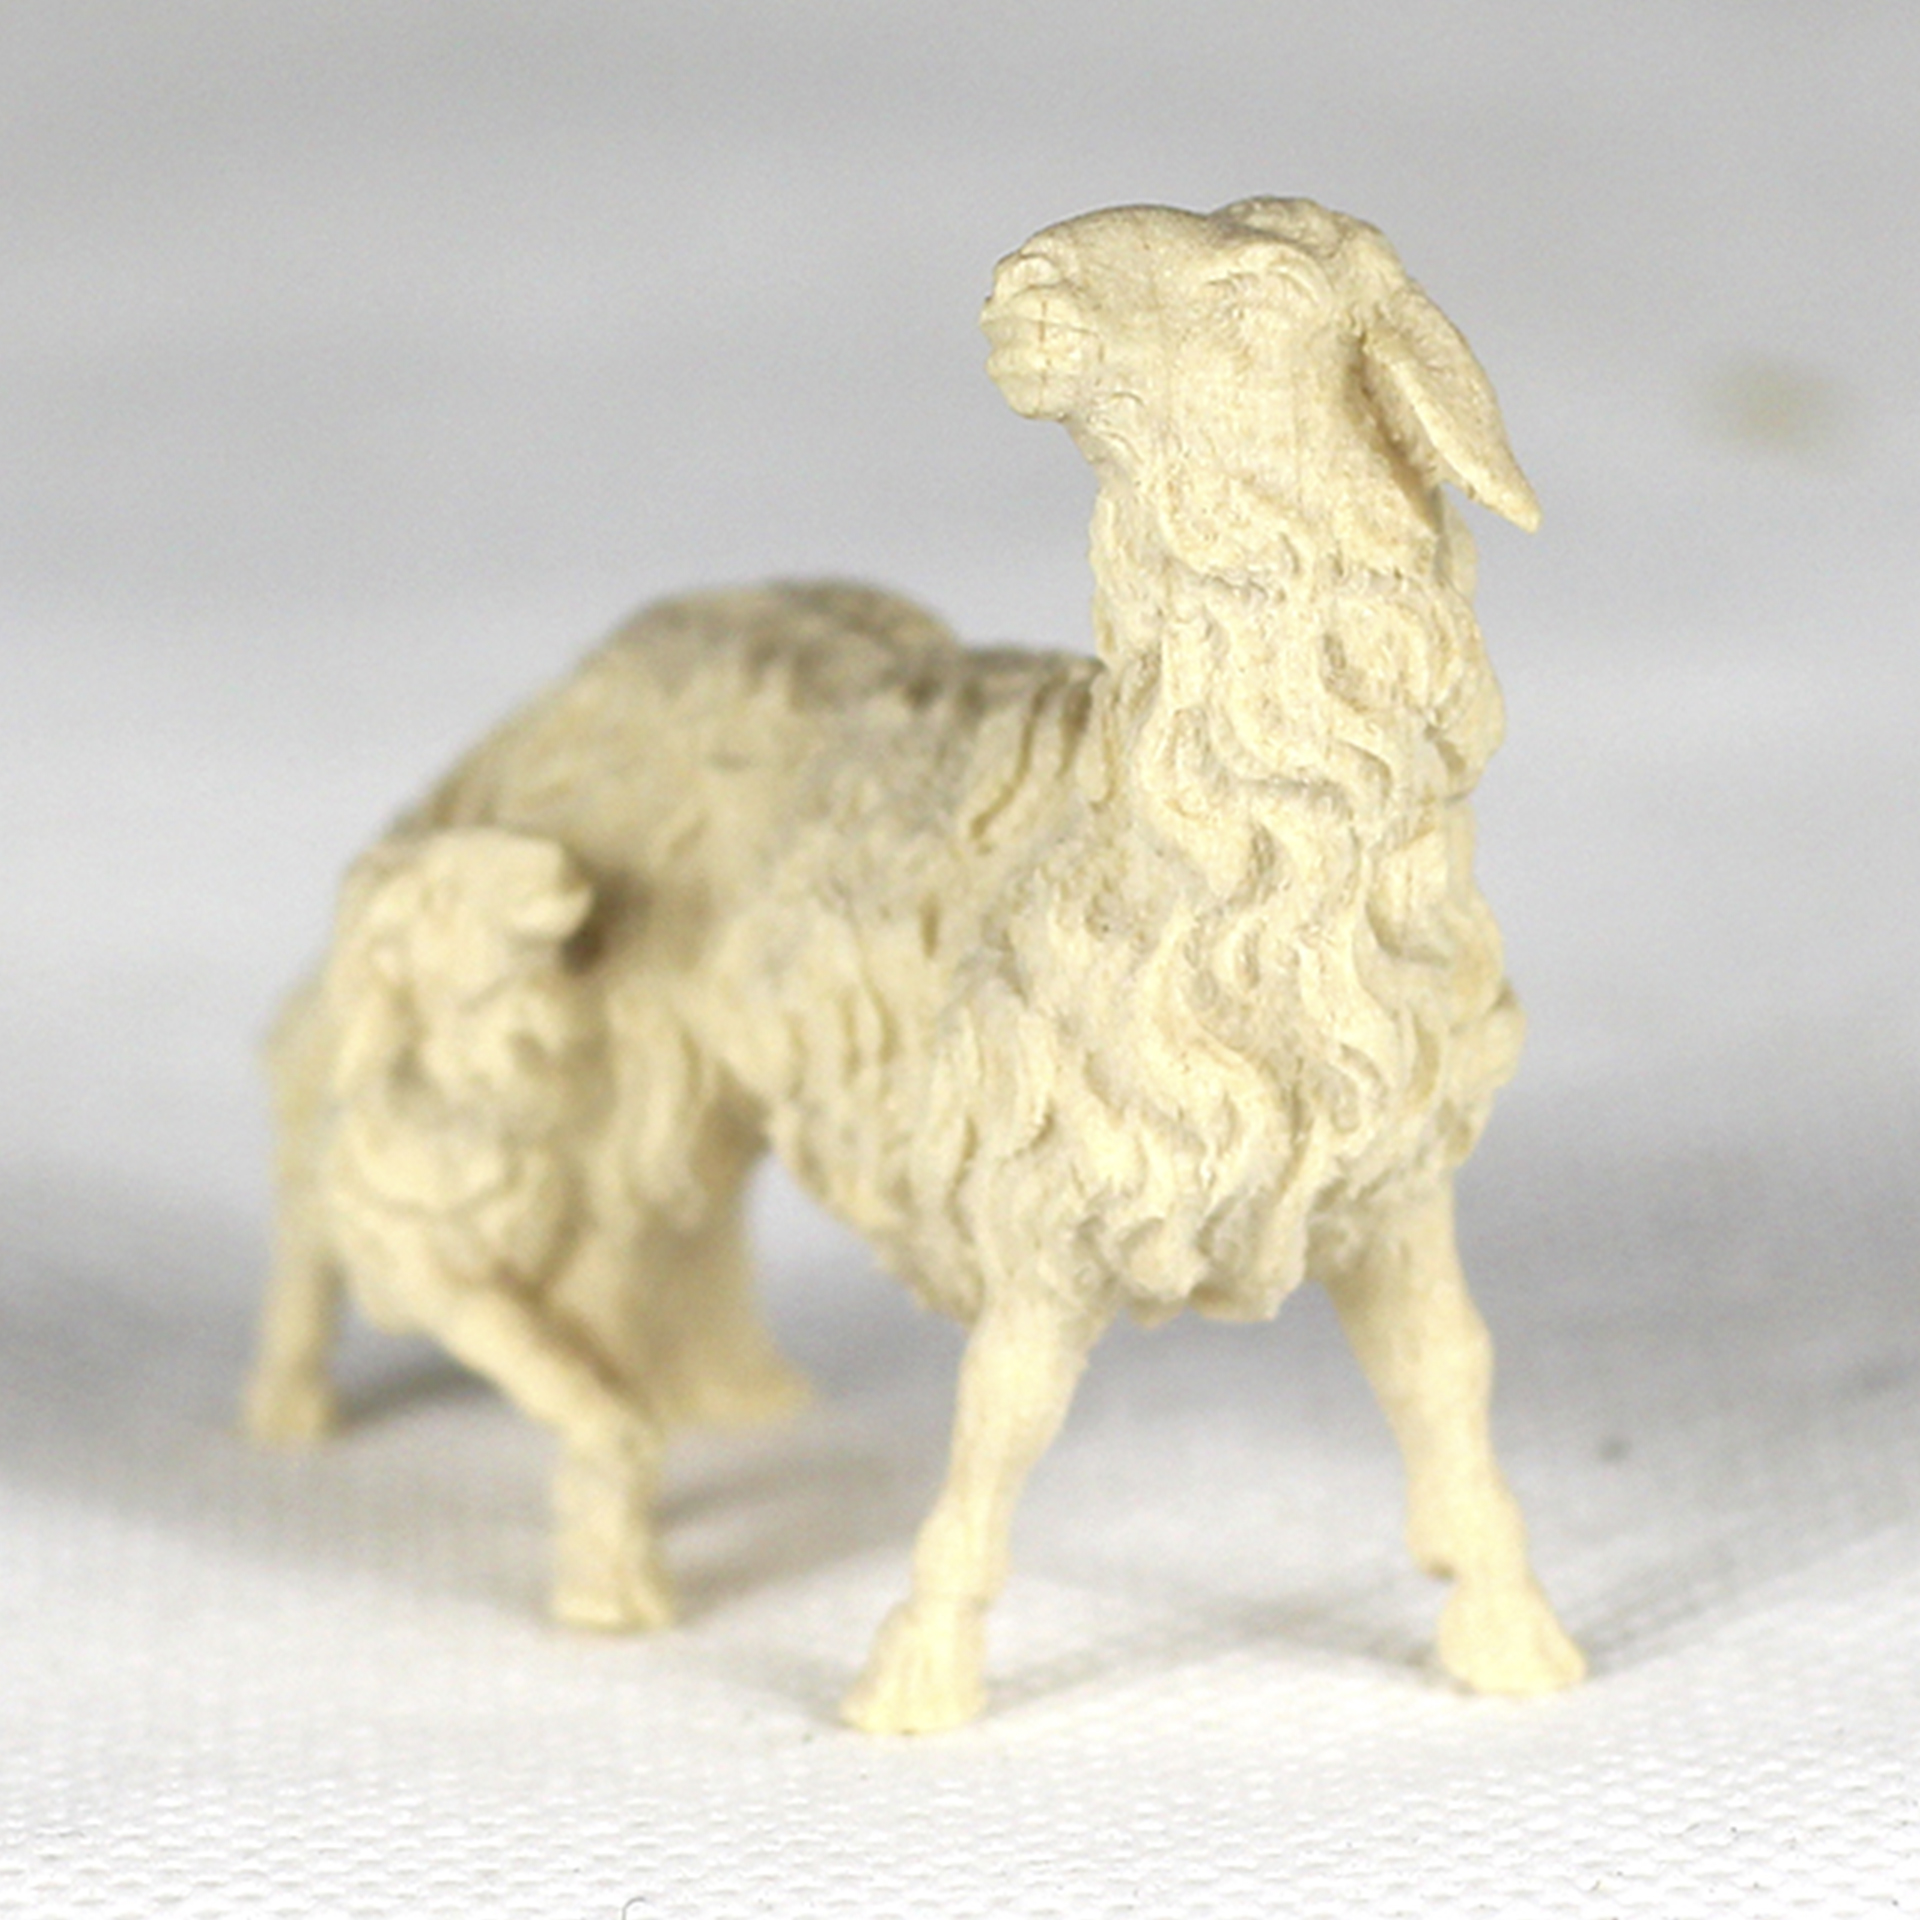 Krippenfigur Schaf in natur aus der Serie der Ulrich Krippe